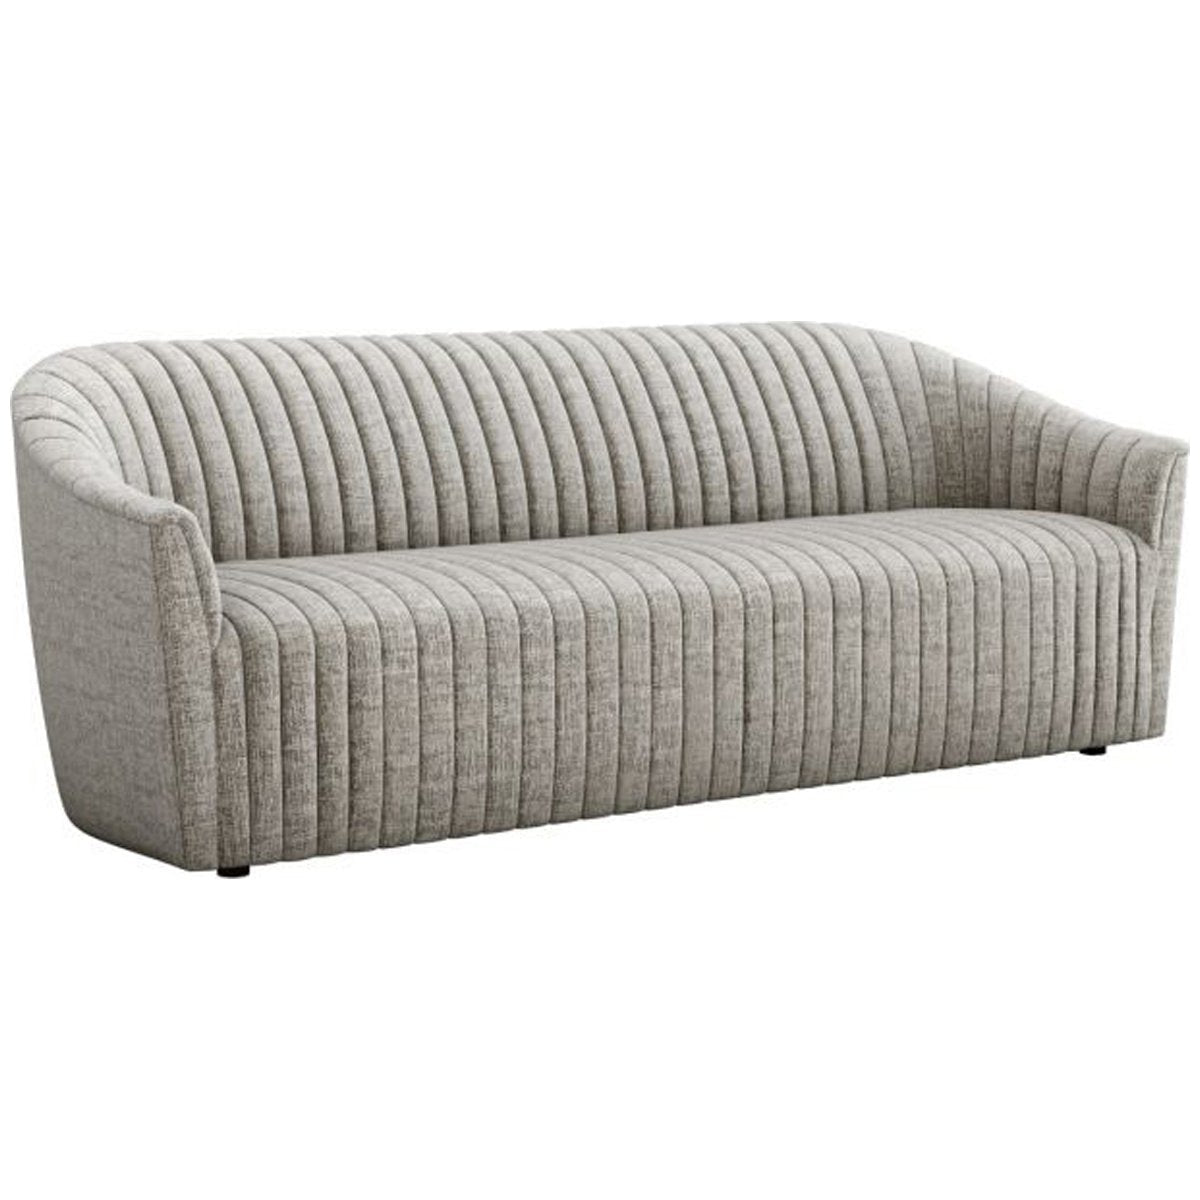 Interlude Home Channel Sofa